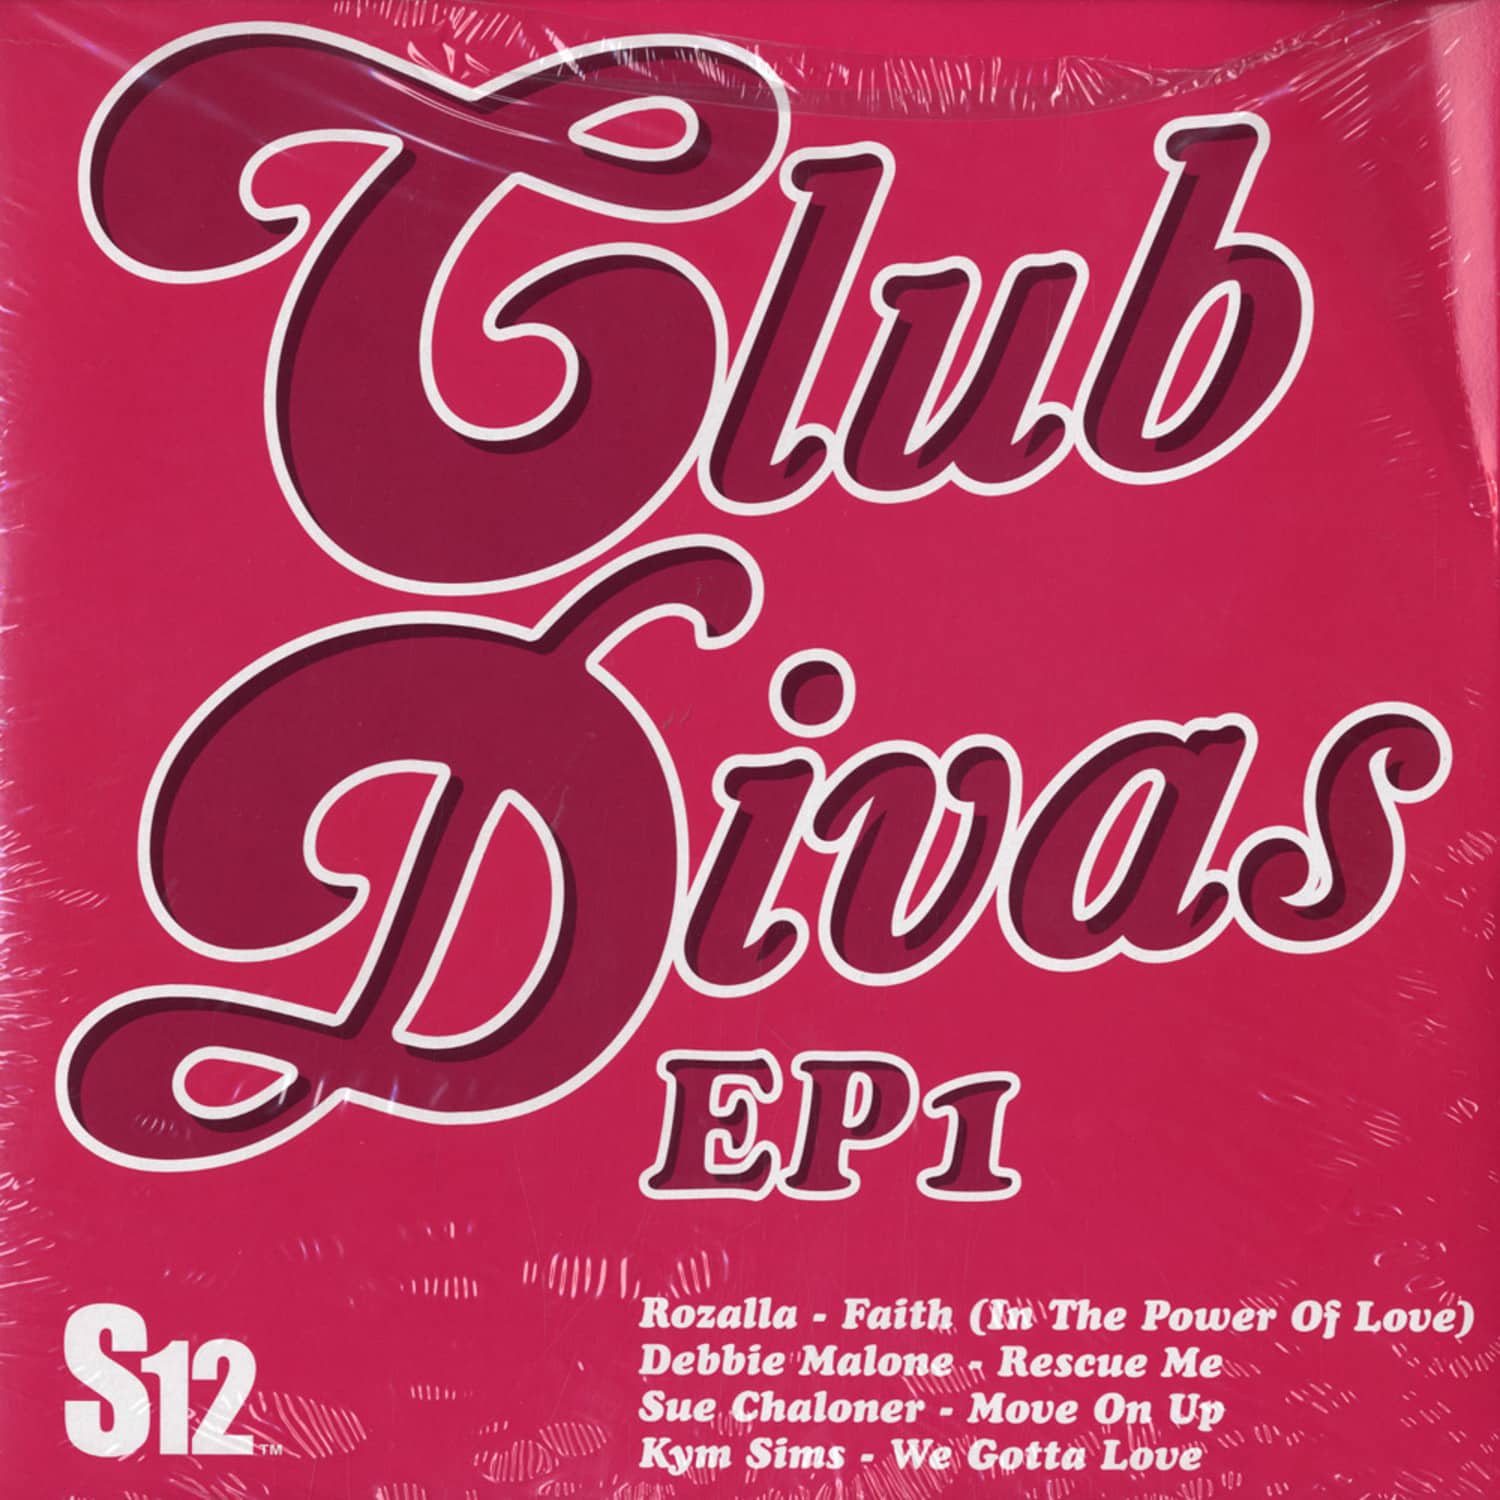 V/A - CLUB DIVAS EP1